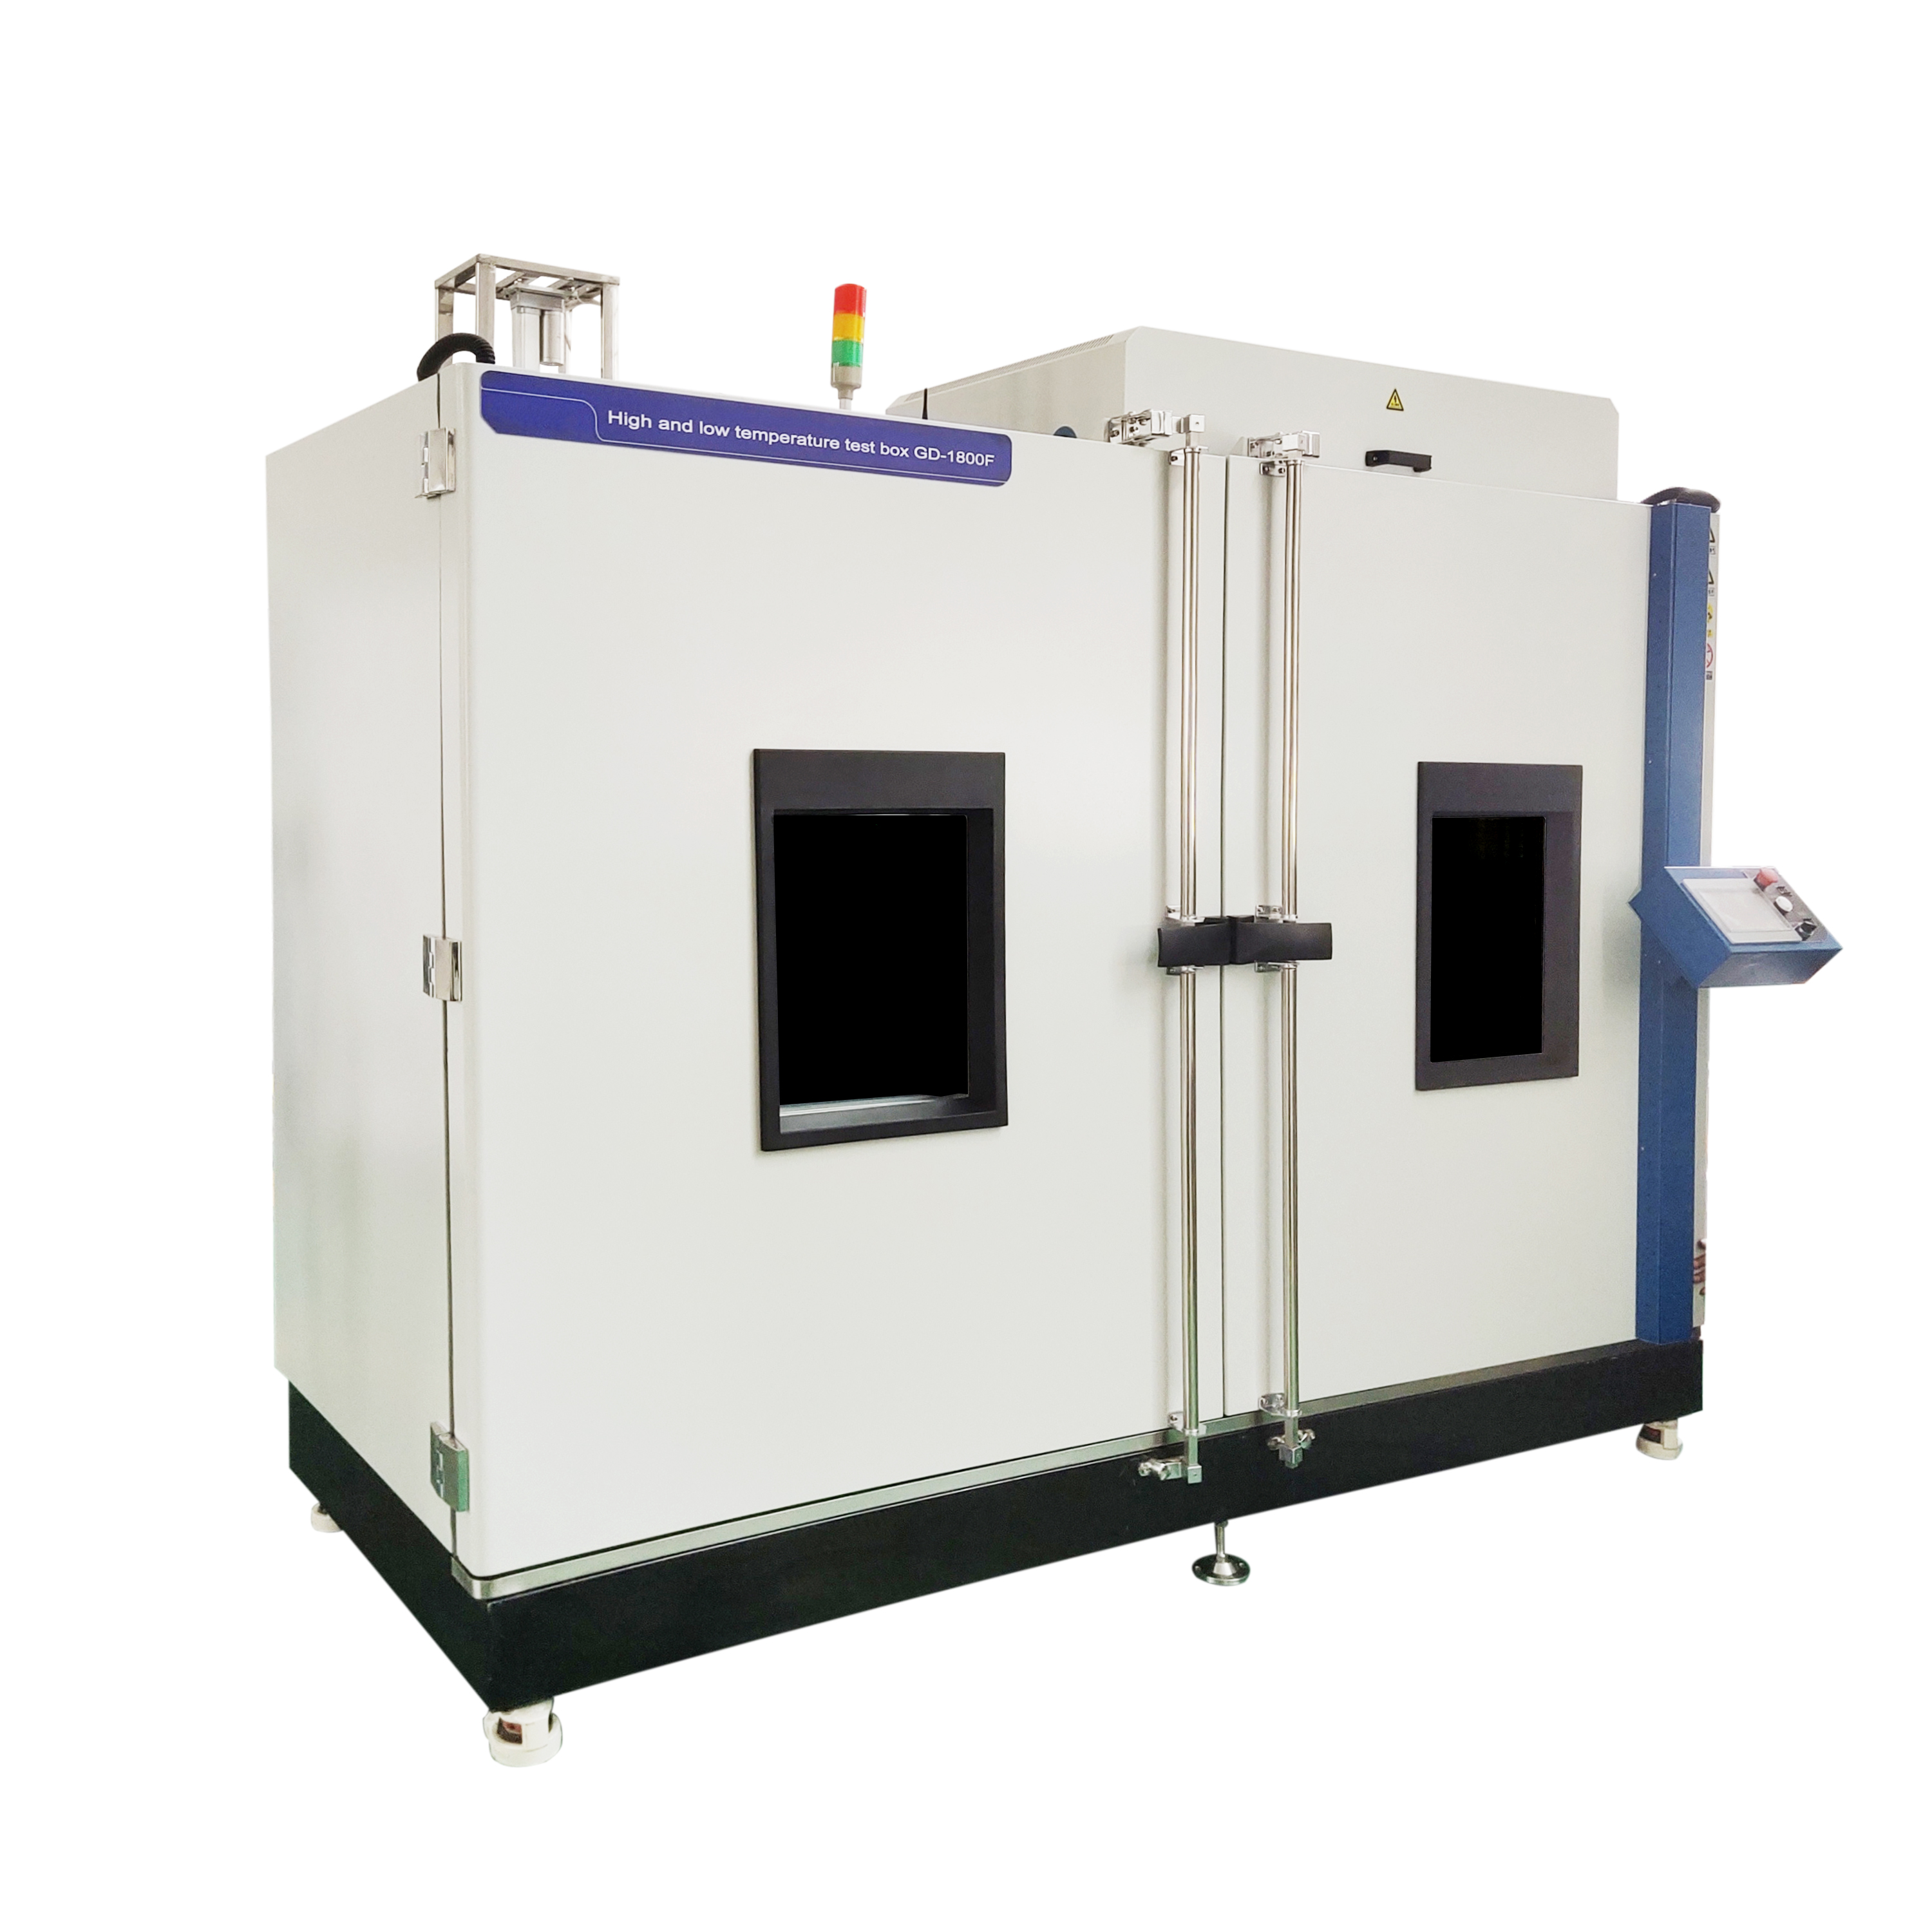 雷达测试温箱GD-1800F 高低温试验箱